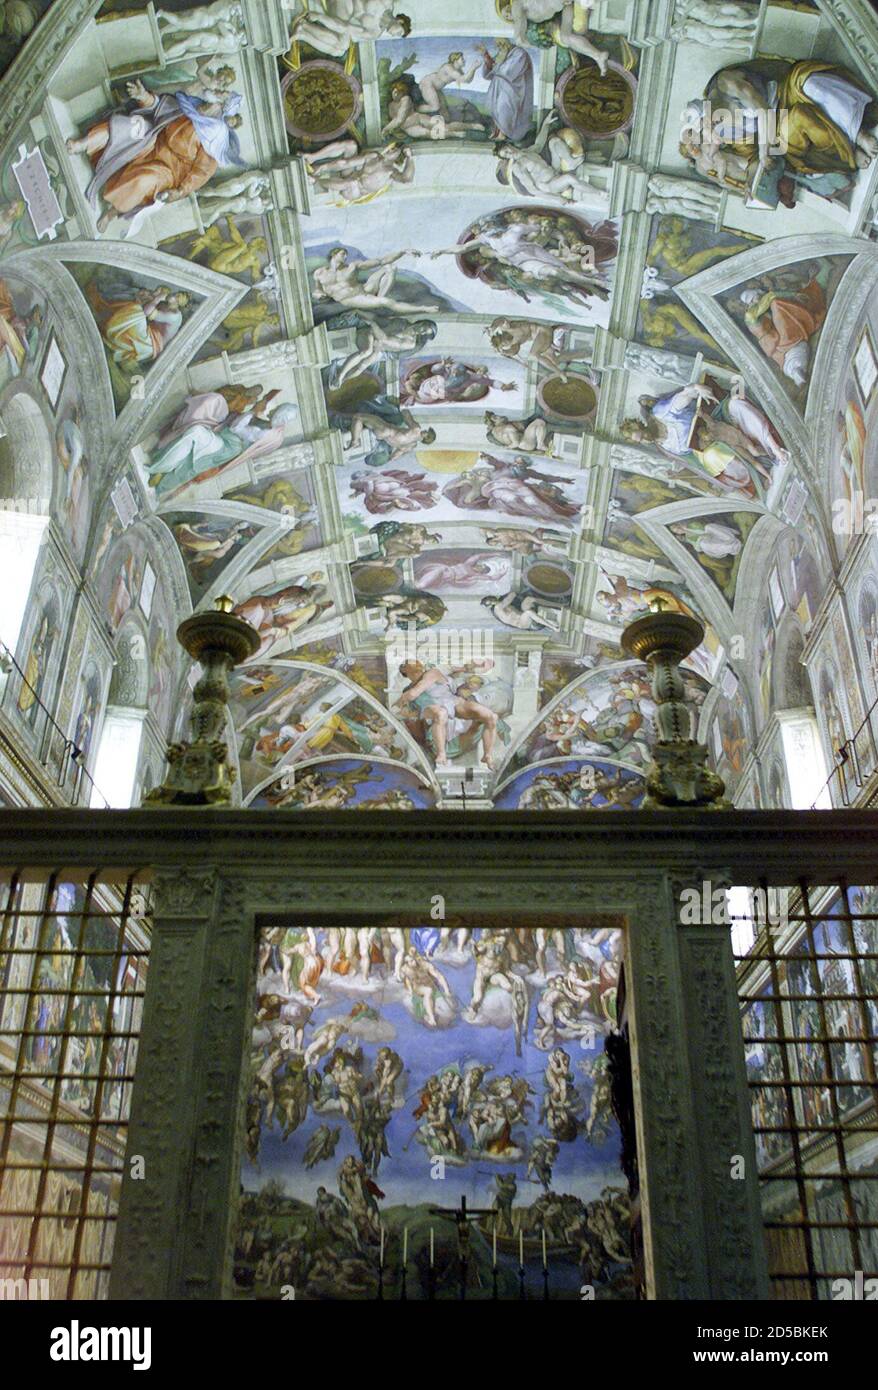 Una vista de la capilla Sixtina del siglo XV totalmente restaurada con el  'juicio final' de Miguel Ángel se ve el 10 de diciembre, después de  completar una renovación de 20 años